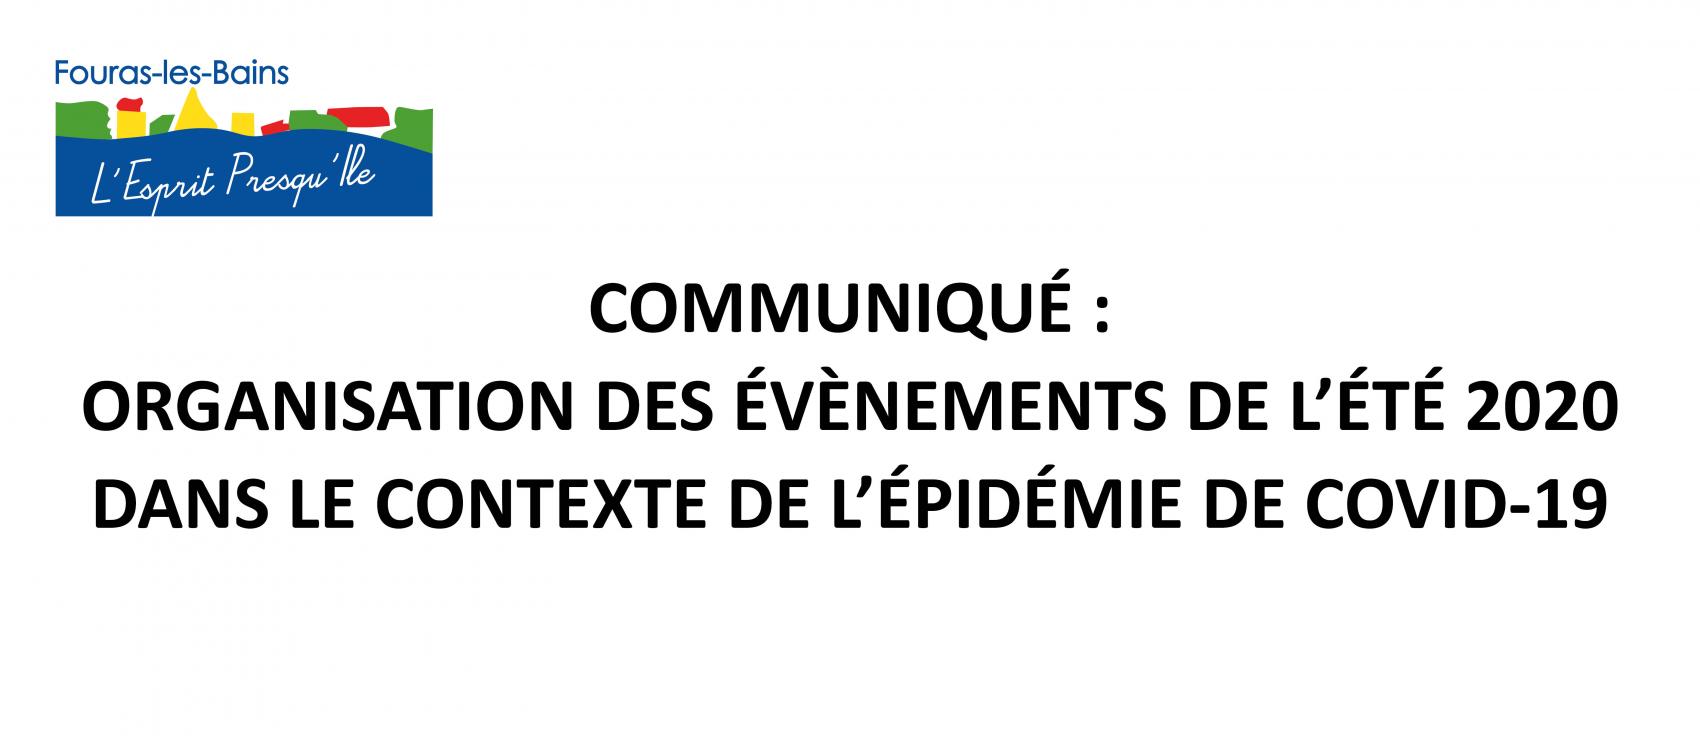  COMMUNIQUÉ - ORGANISATION DES ÉVÈNEMENTS DE L’ÉTÉ 2020 DANS LE CONTEXTE DE L’ÉPIDÉMIE DE COVID-19